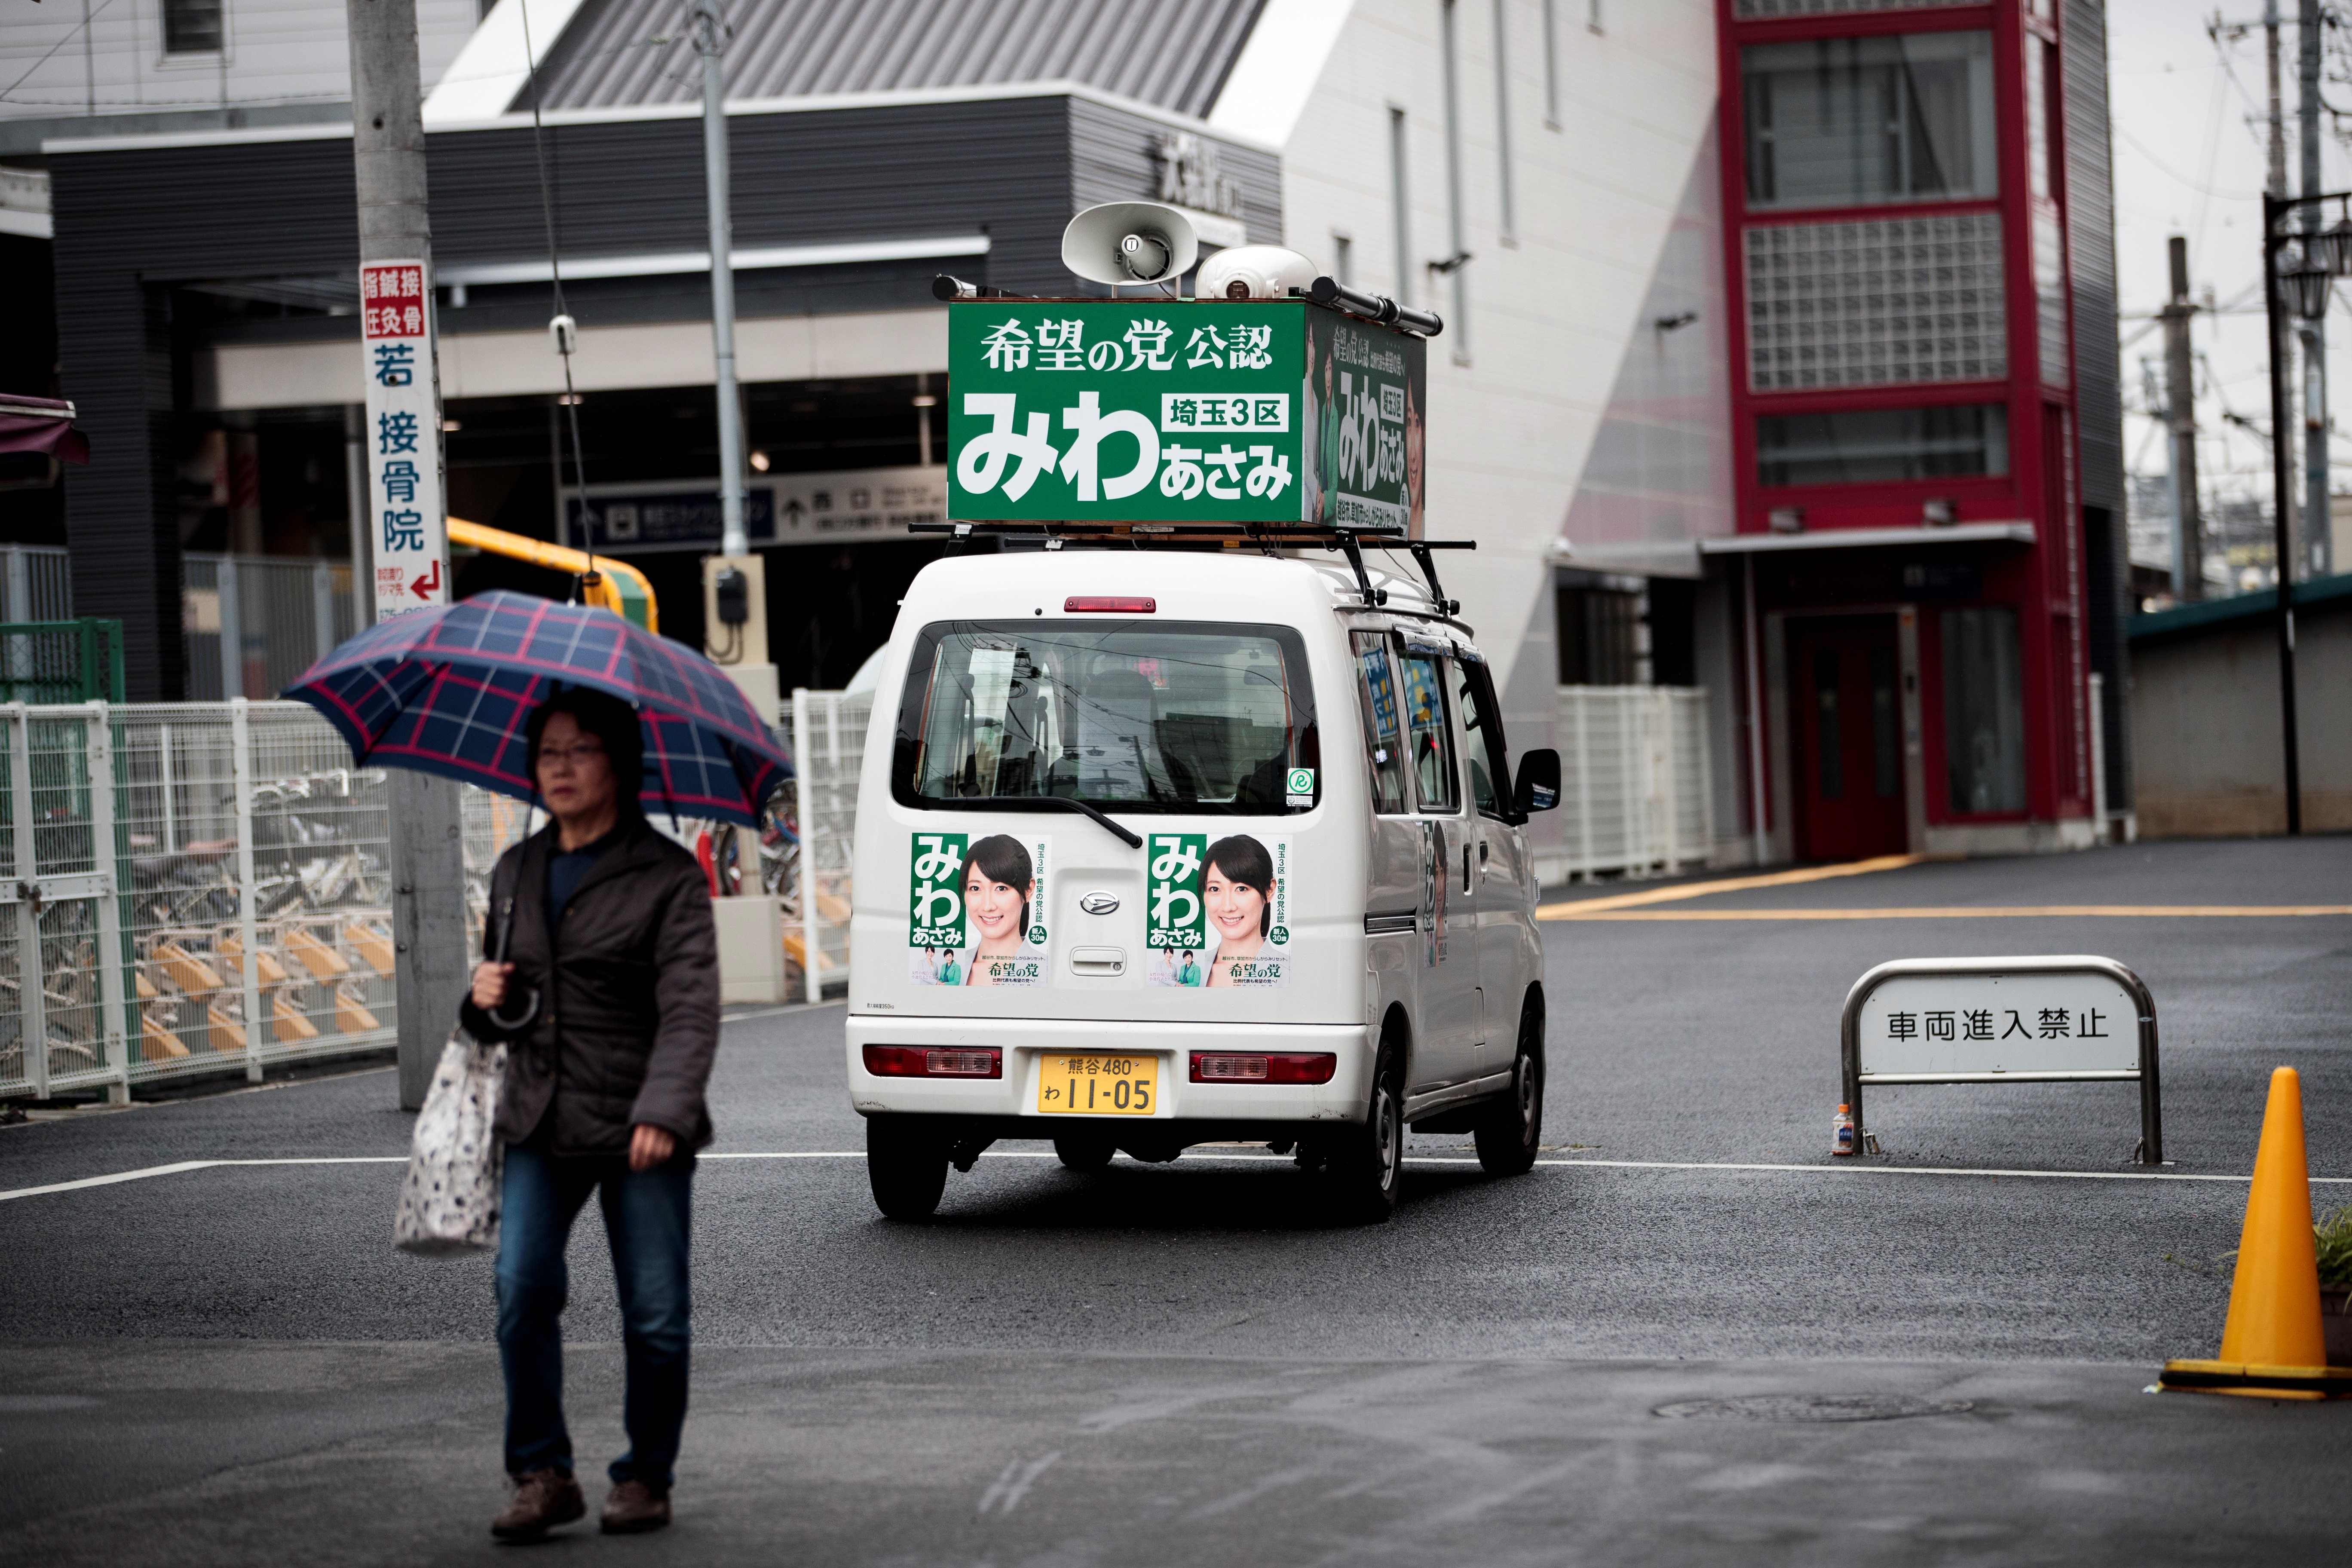 سيارة مرشحة حزب الأمل تجوب شوارع طوكيو